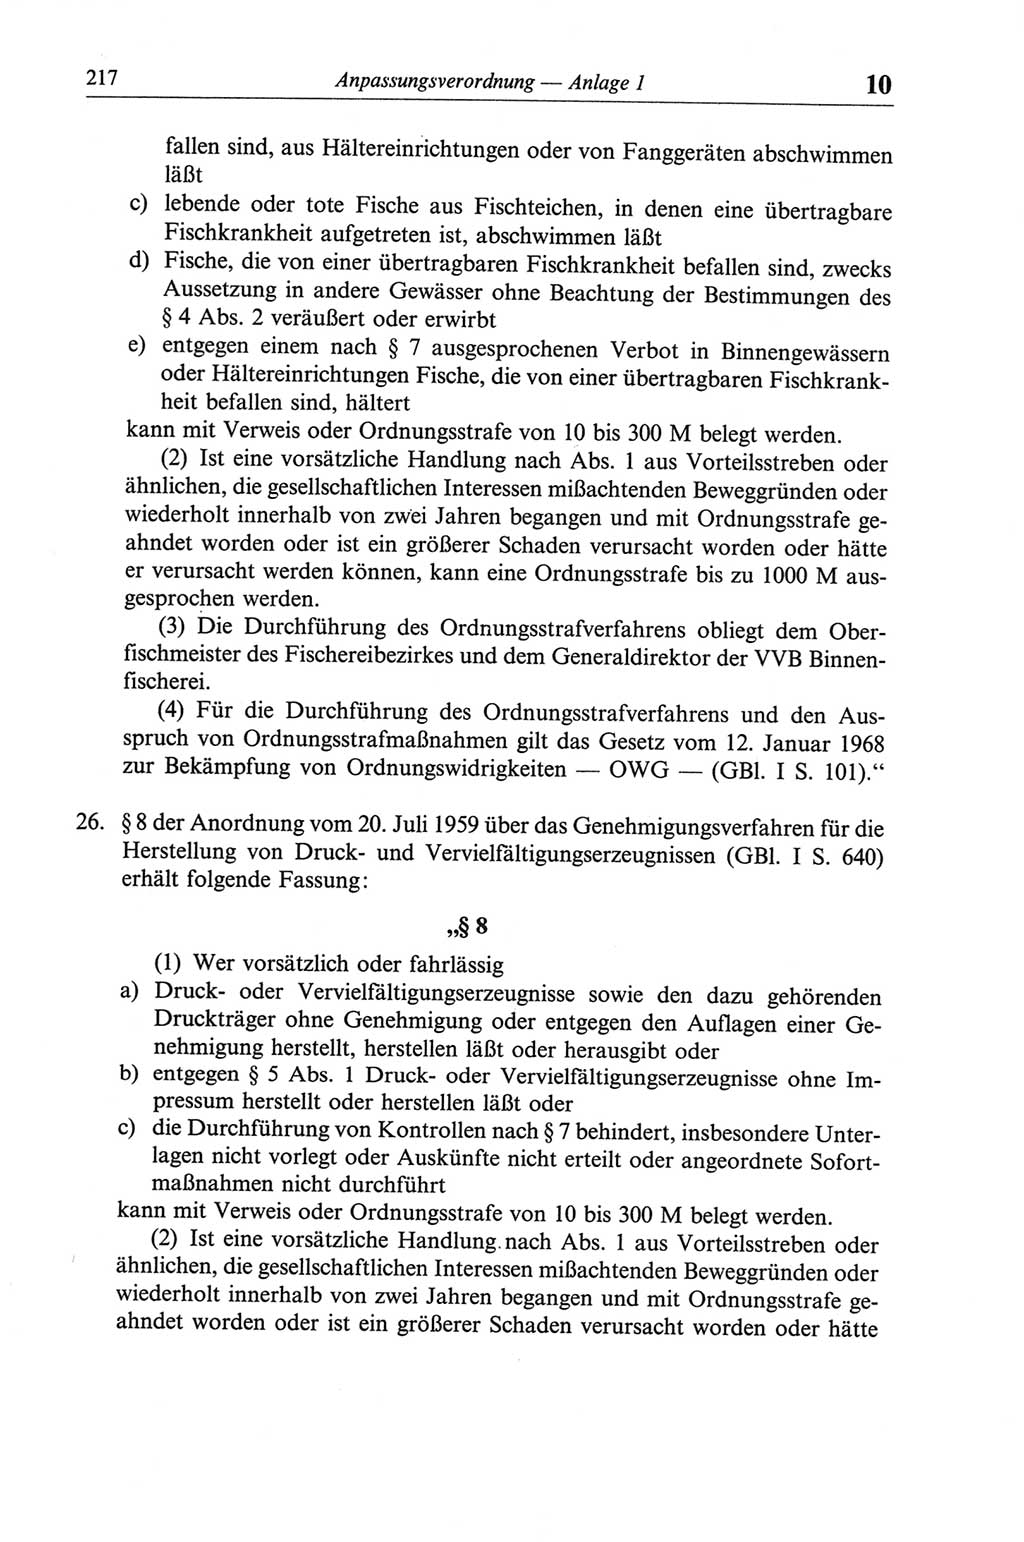 Strafgesetzbuch (StGB) der Deutschen Demokratischen Republik (DDR) und angrenzende Gesetze und Bestimmungen 1968, Seite 217 (StGB Ges. Best. DDR 1968, S. 217)